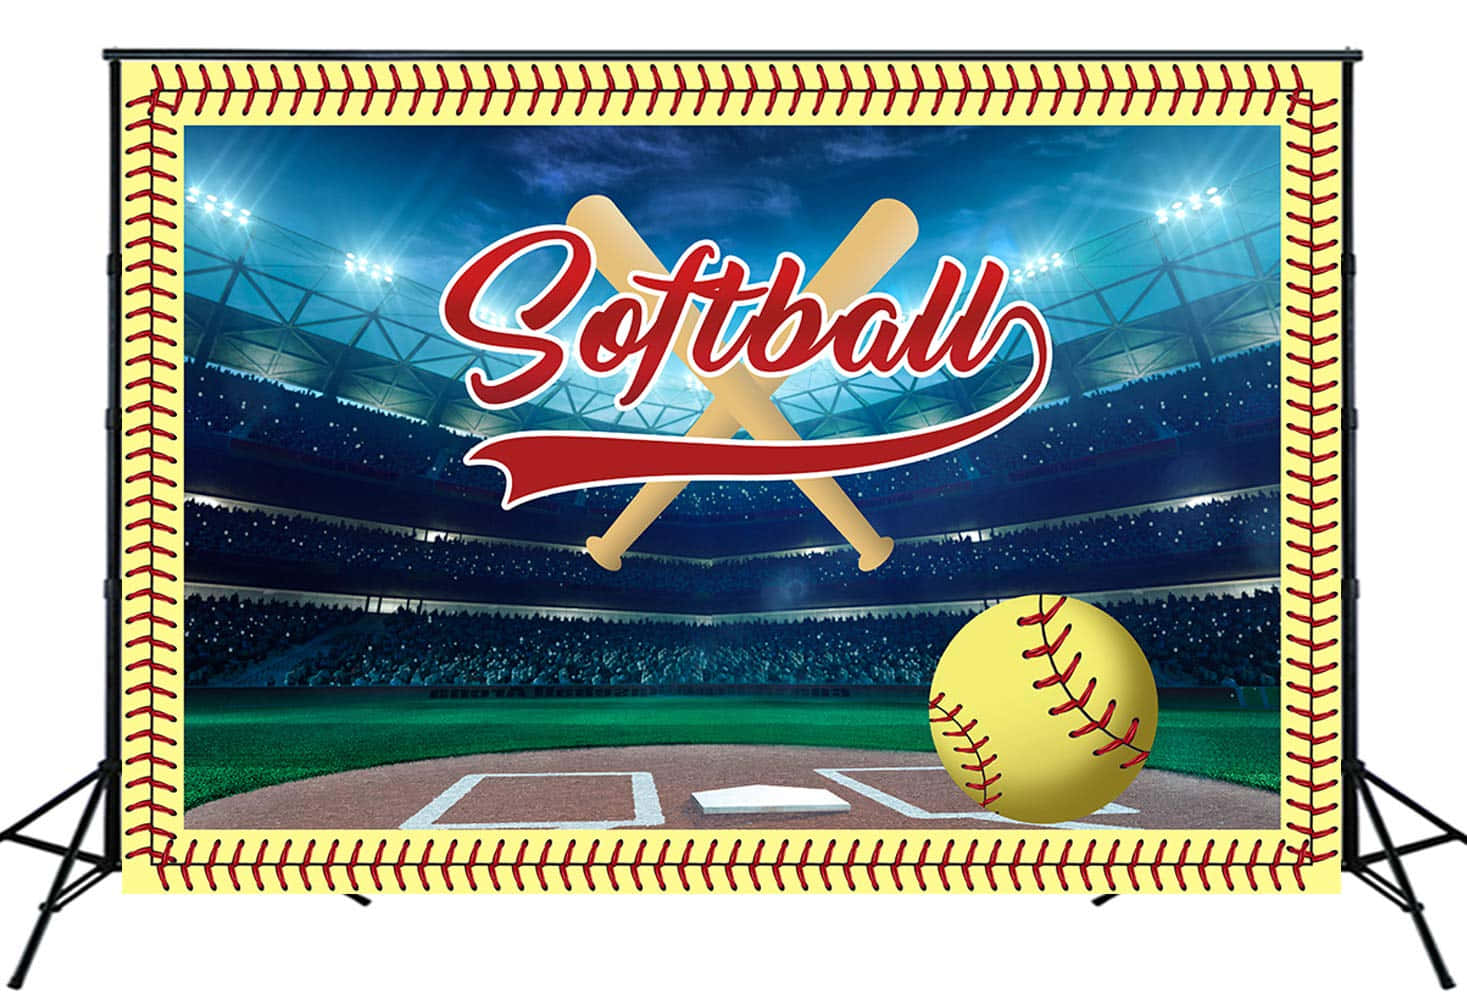 Softball Backdrop With Baseball Bat And Ball